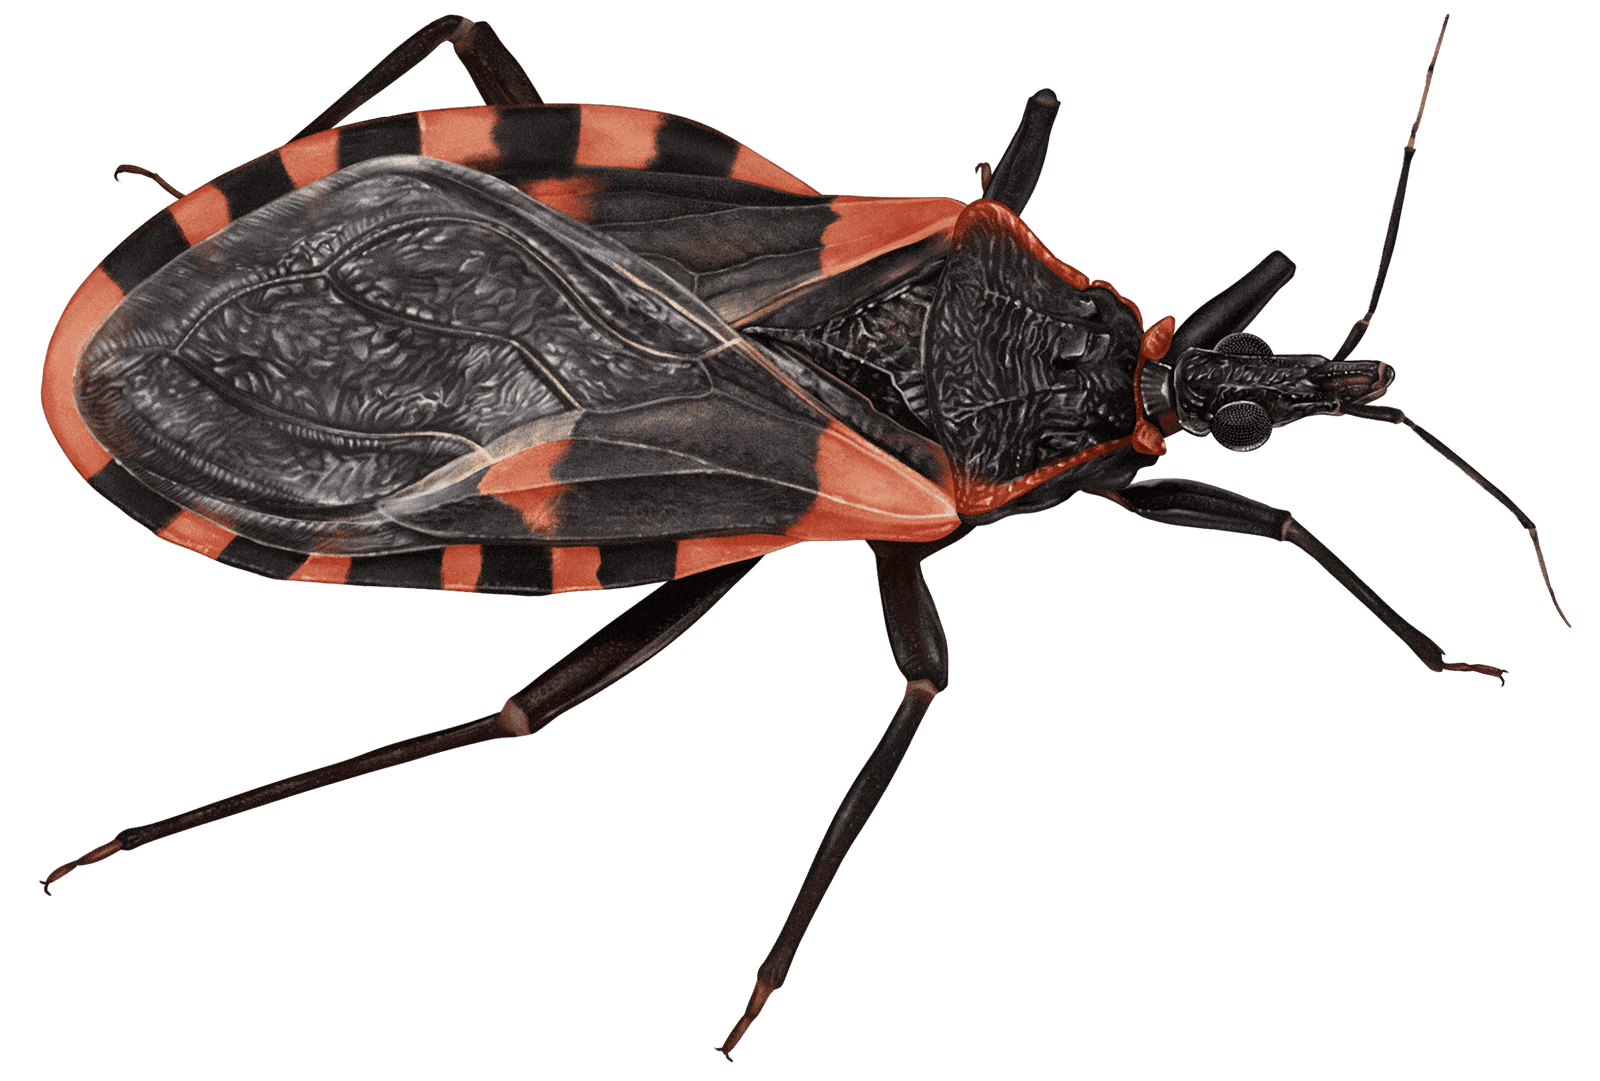 Chagas’ disease